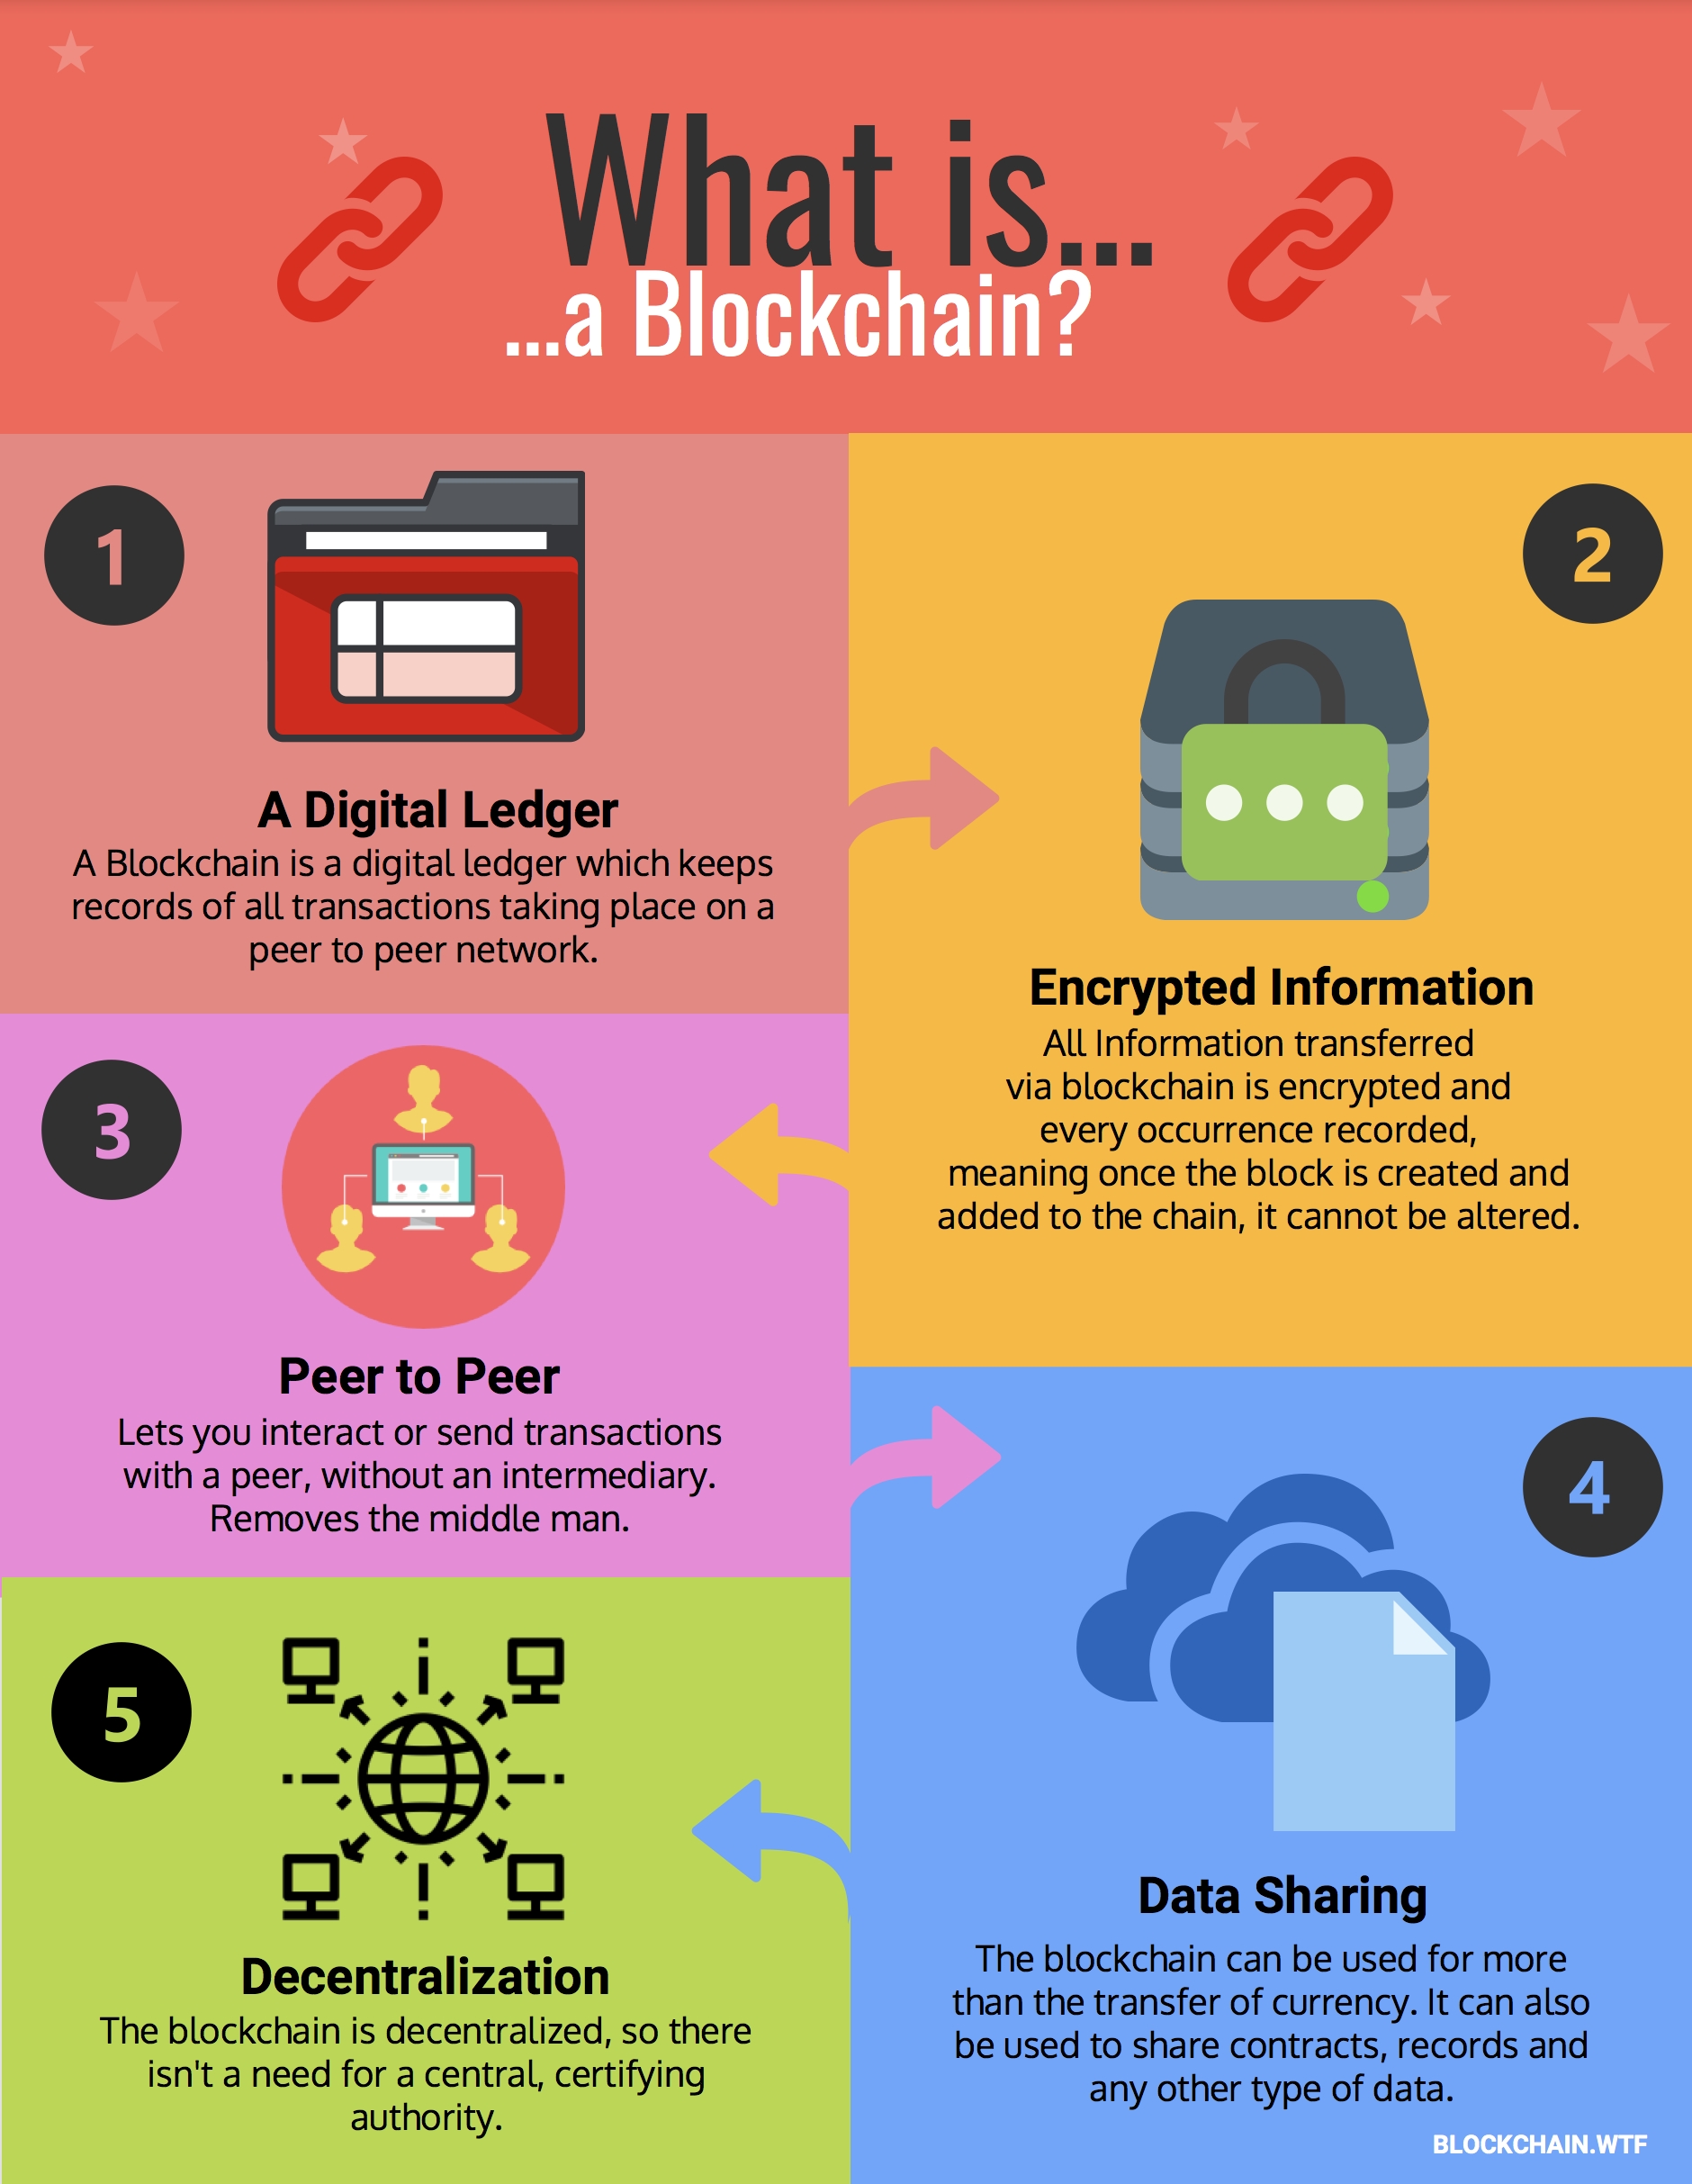 bitcoin cash blockchain info